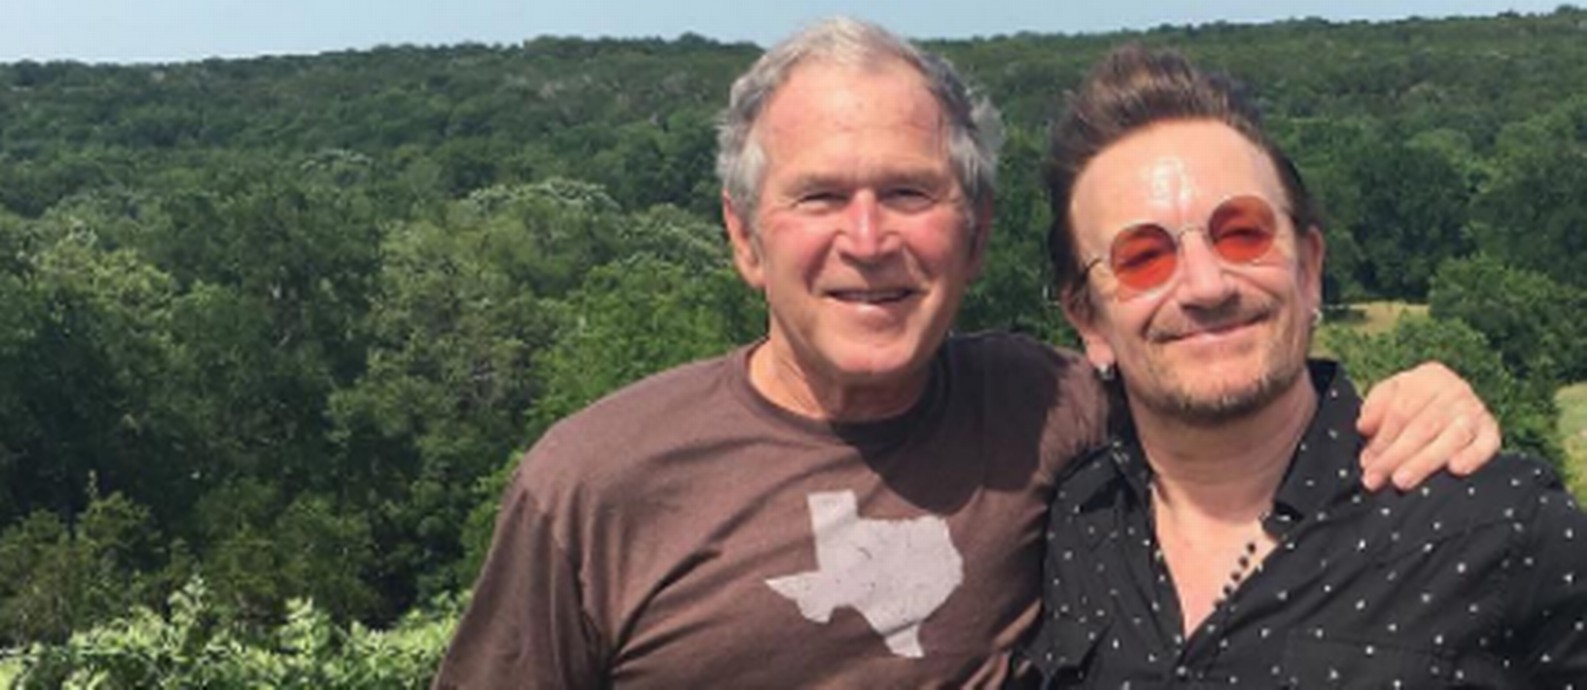 George Bush e Bono Vox juntos em foto no Instagram Foto: Reprodução